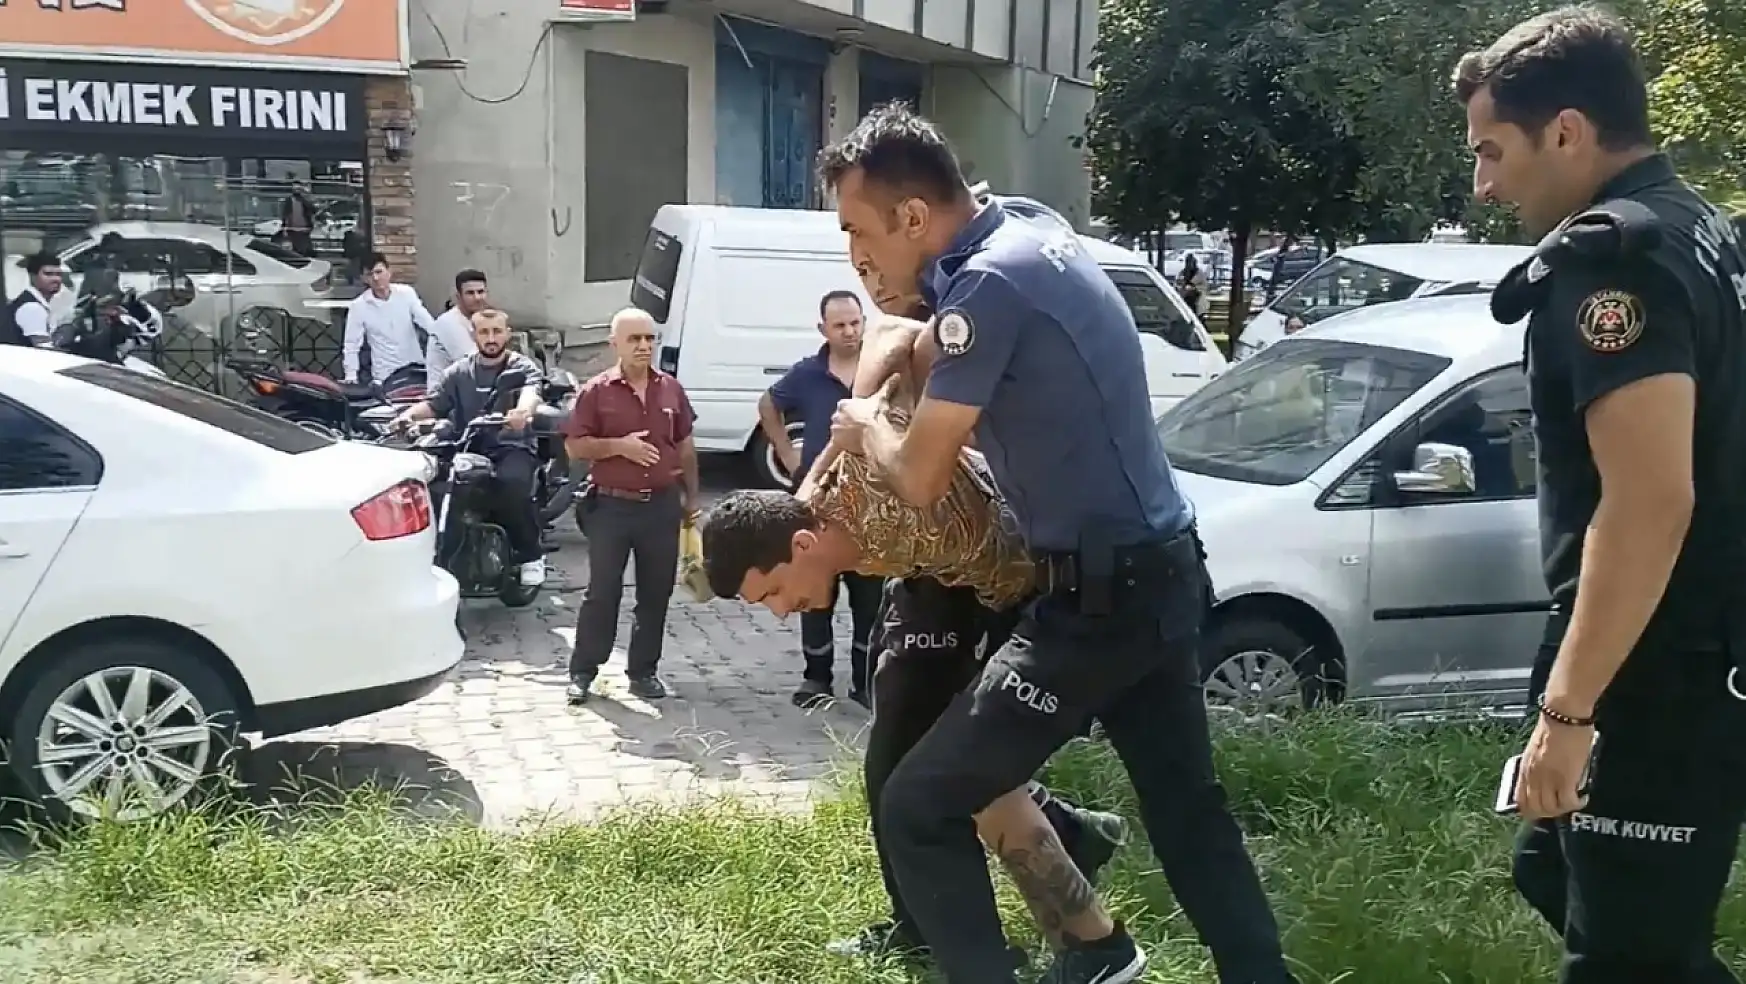 Konya'da, bir haftada 3 farklı gözaltı